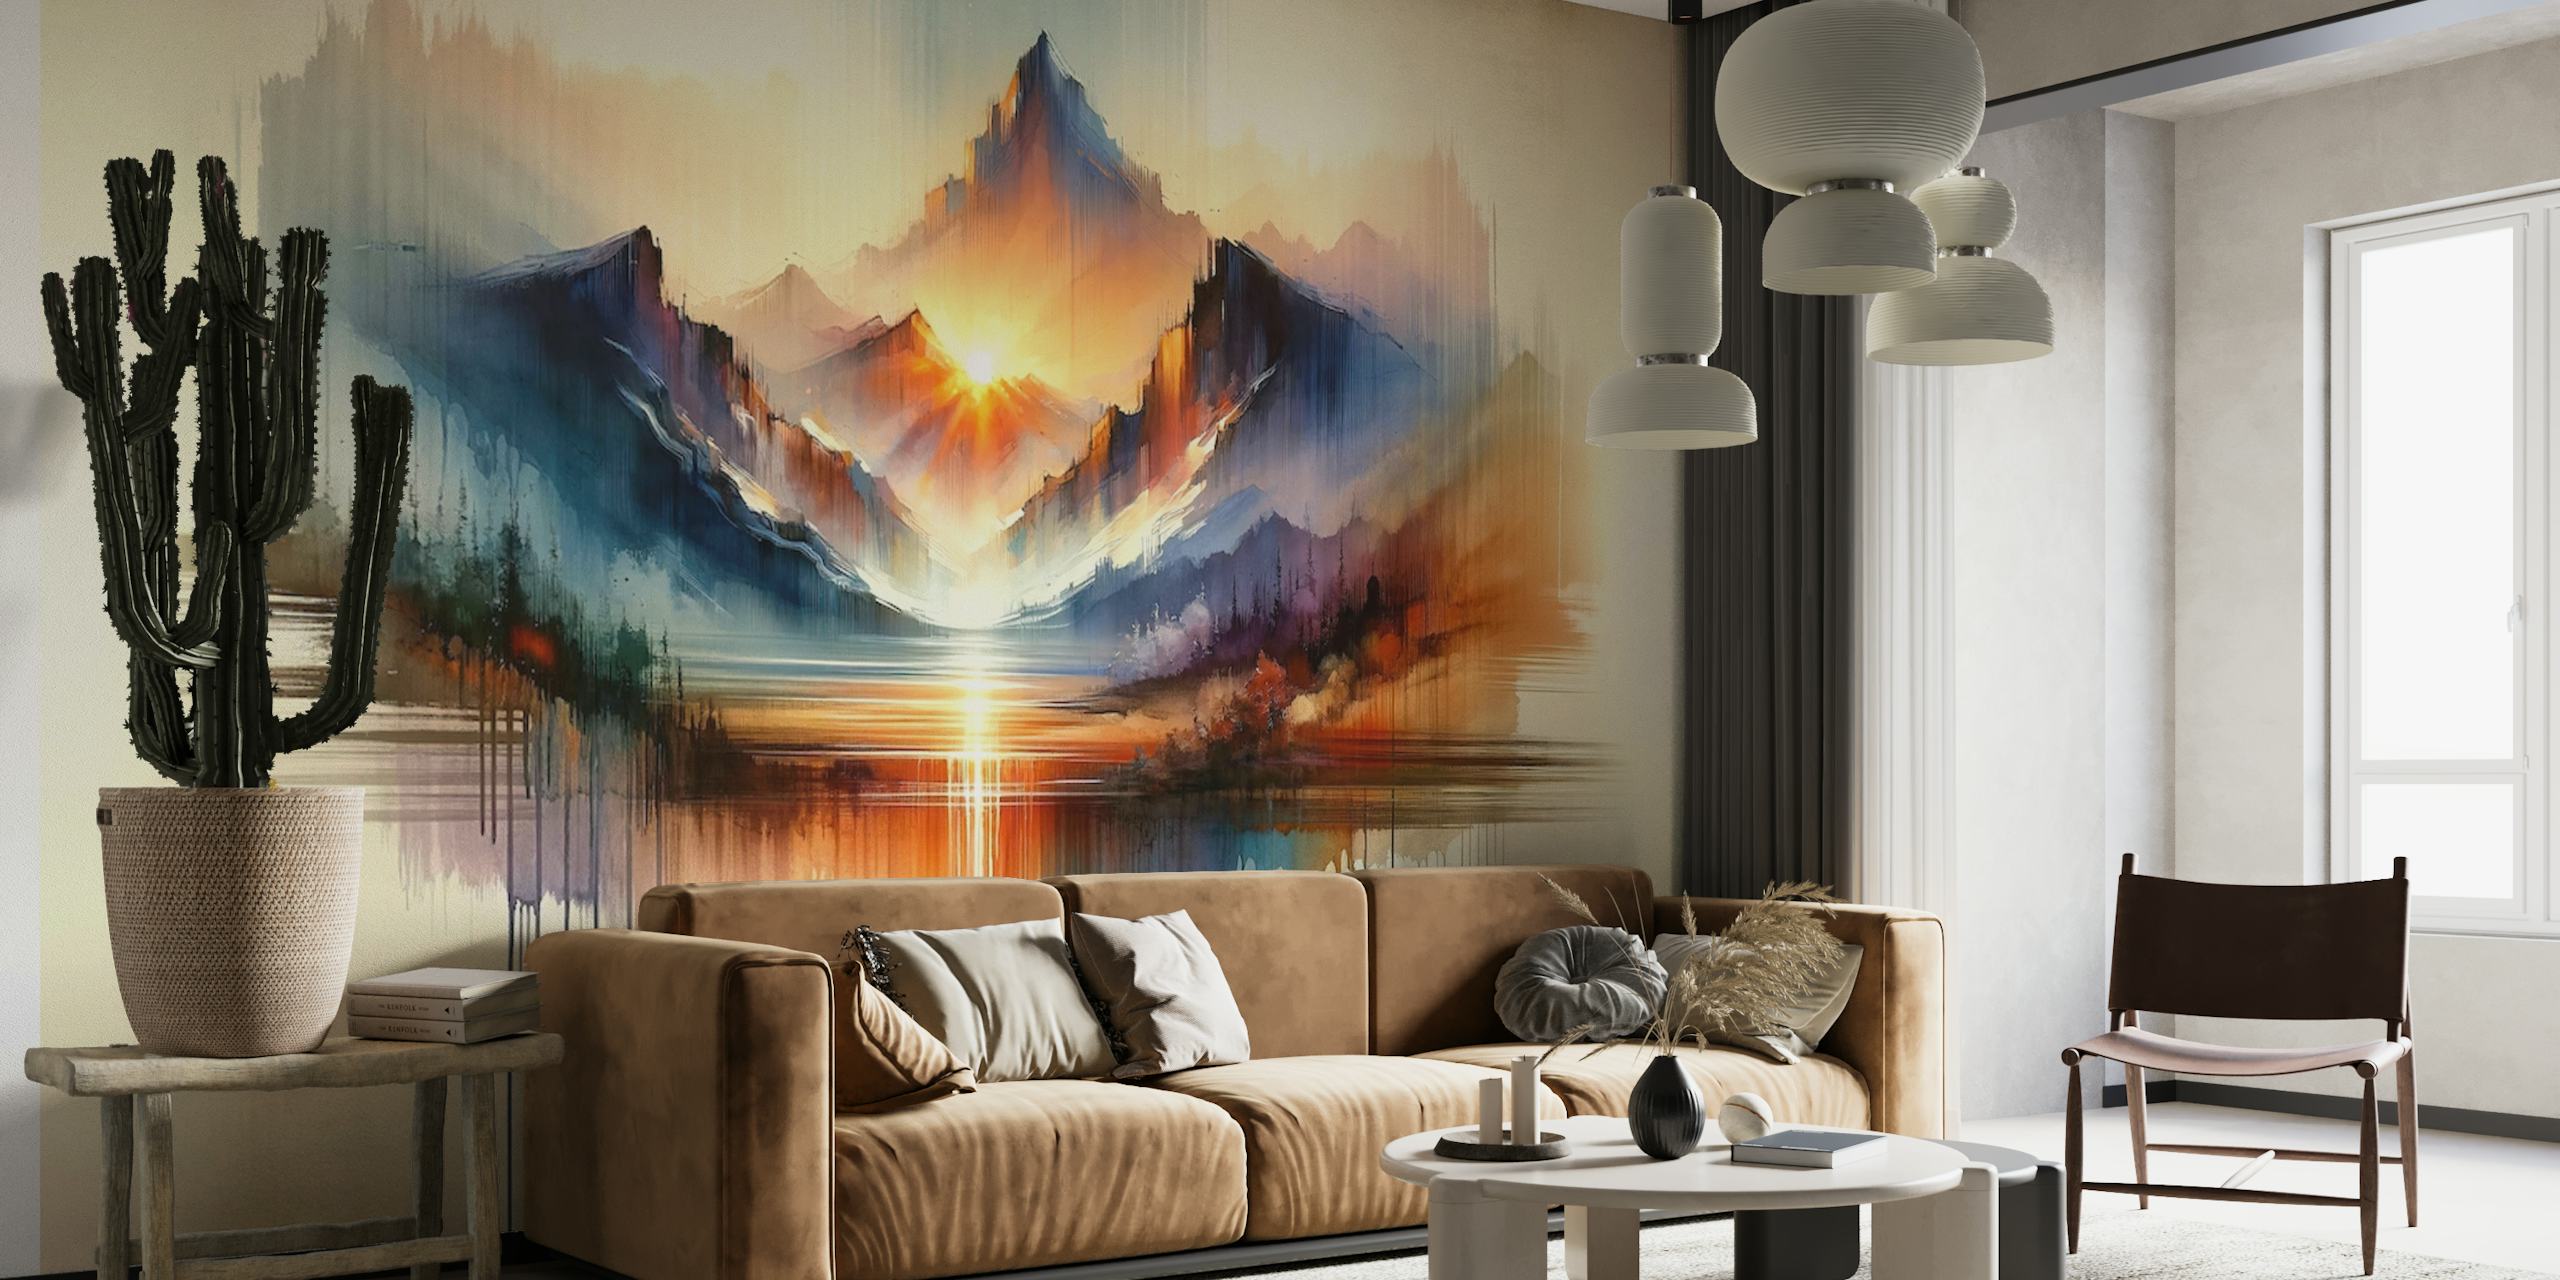 Watercolor Abstract Mountains Landscape papel pintado